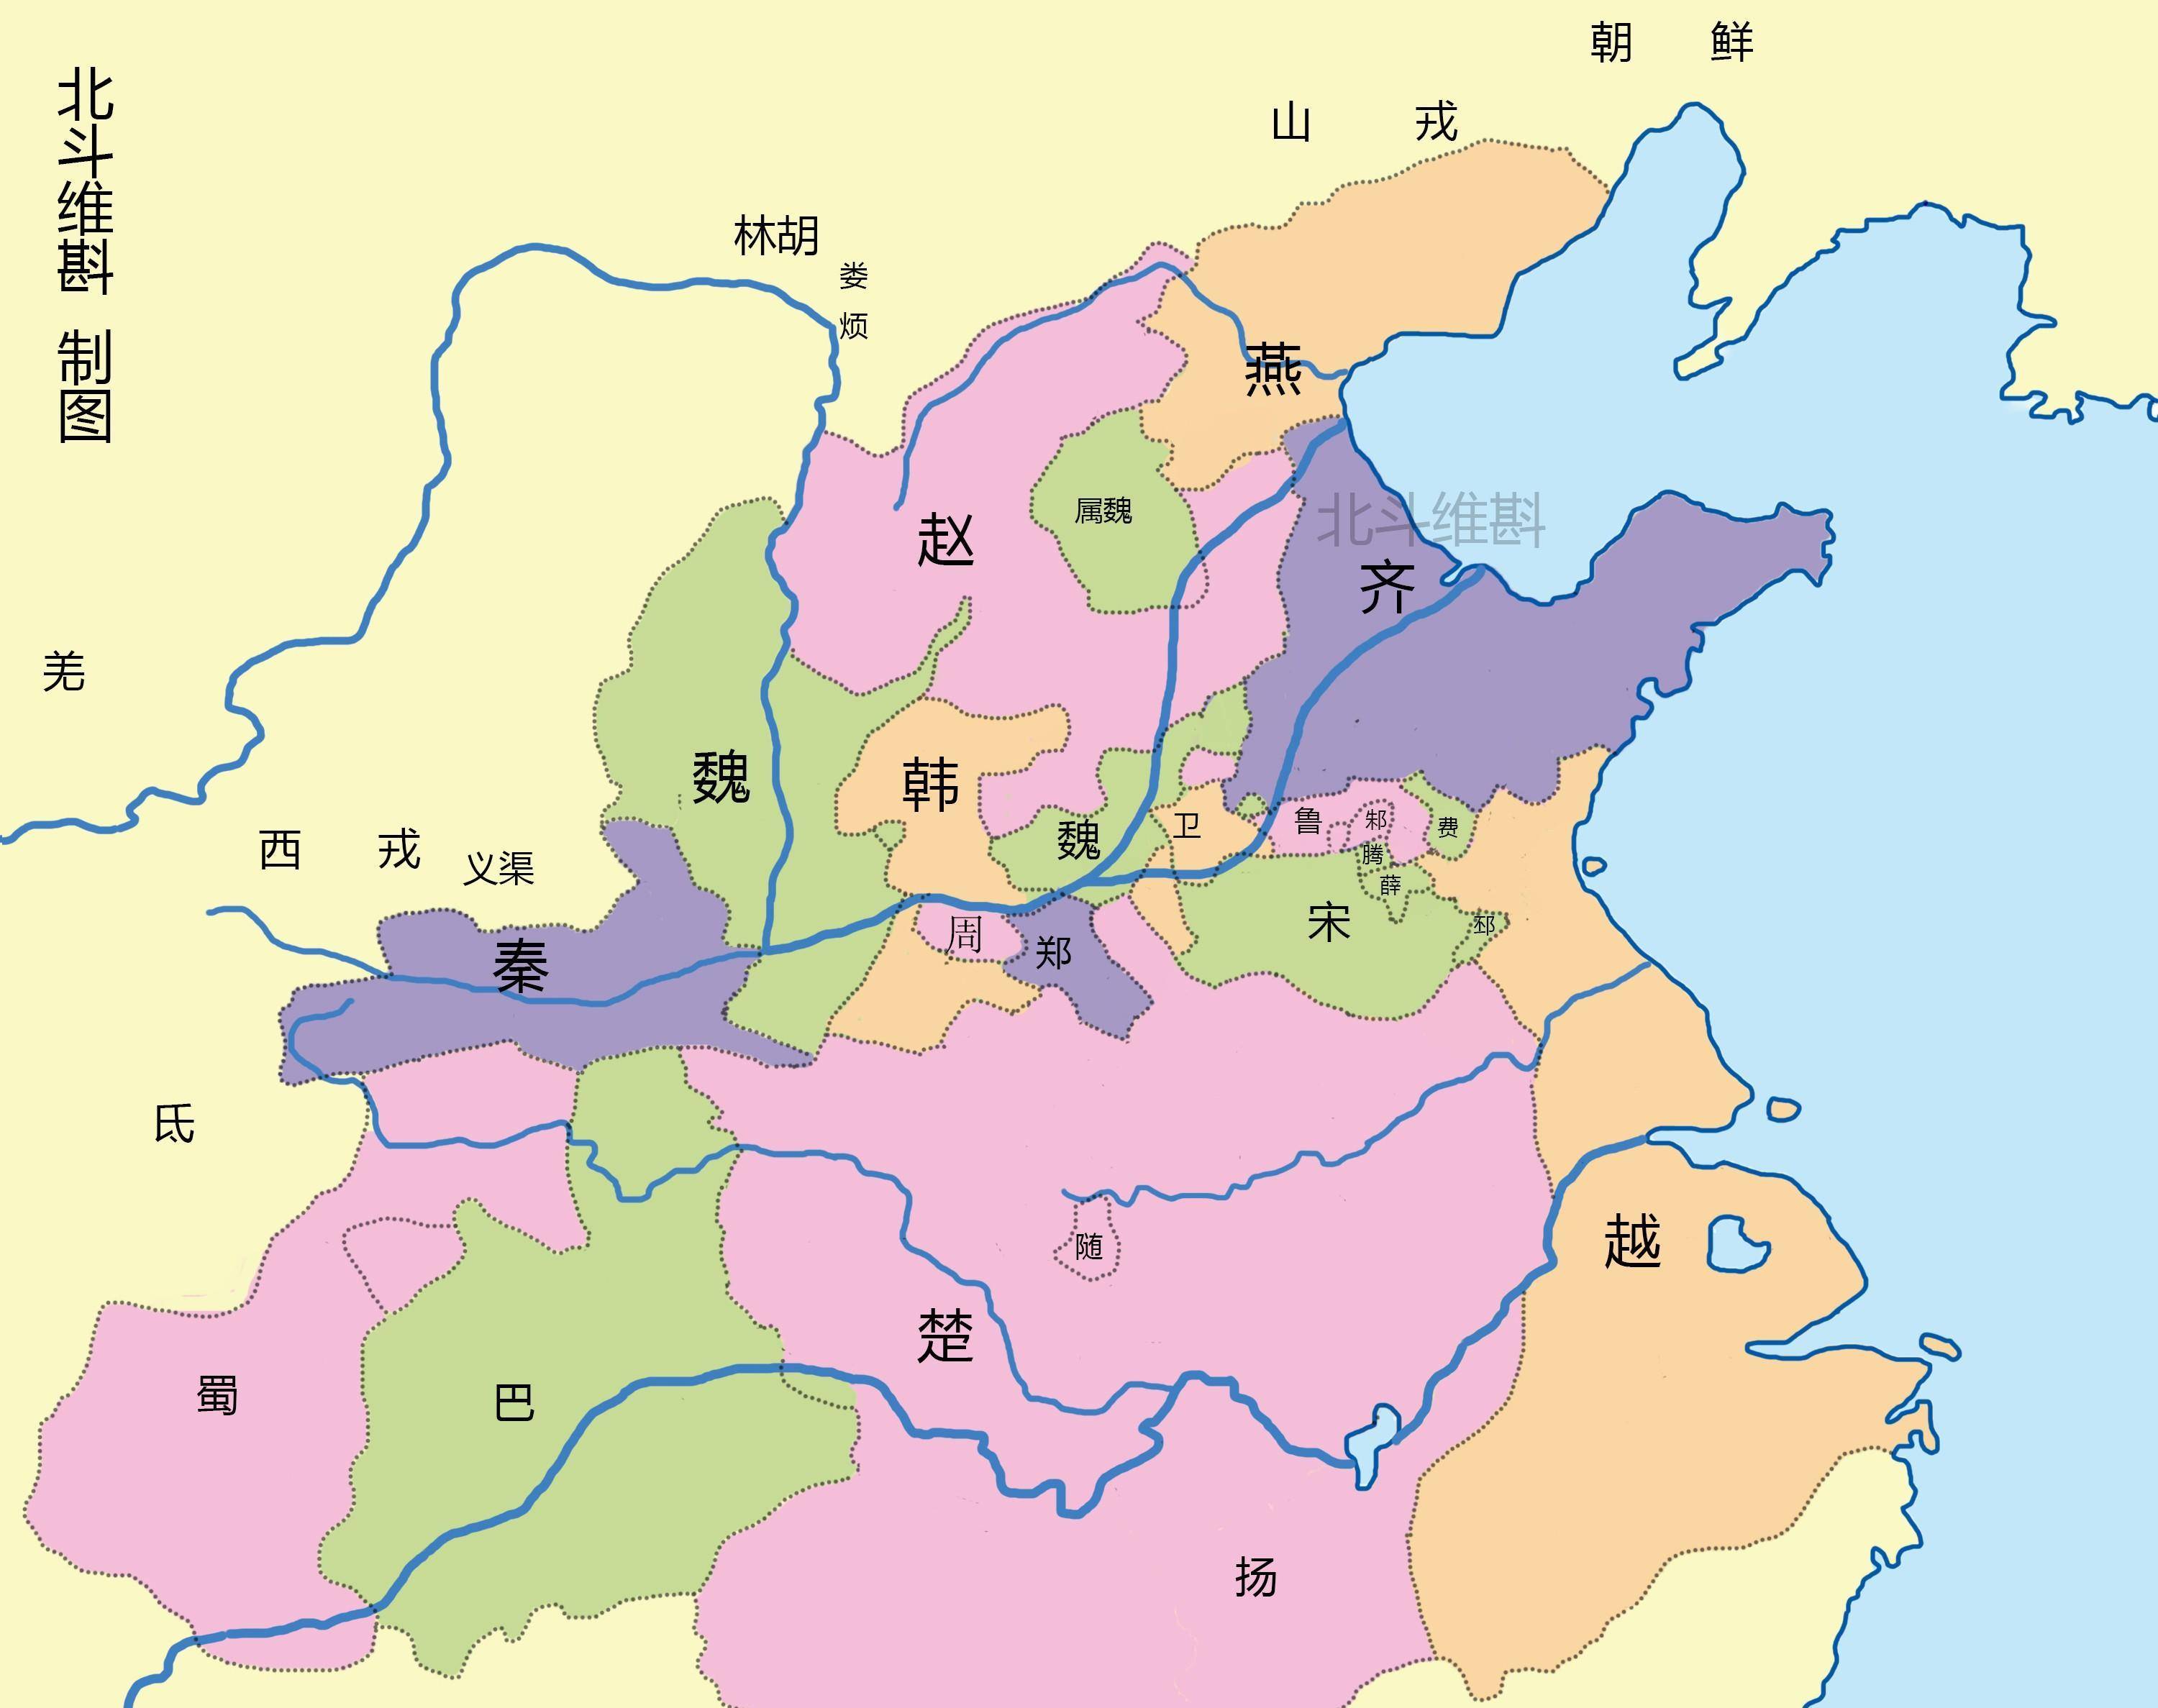 通过地图了解春秋战国550年的战争